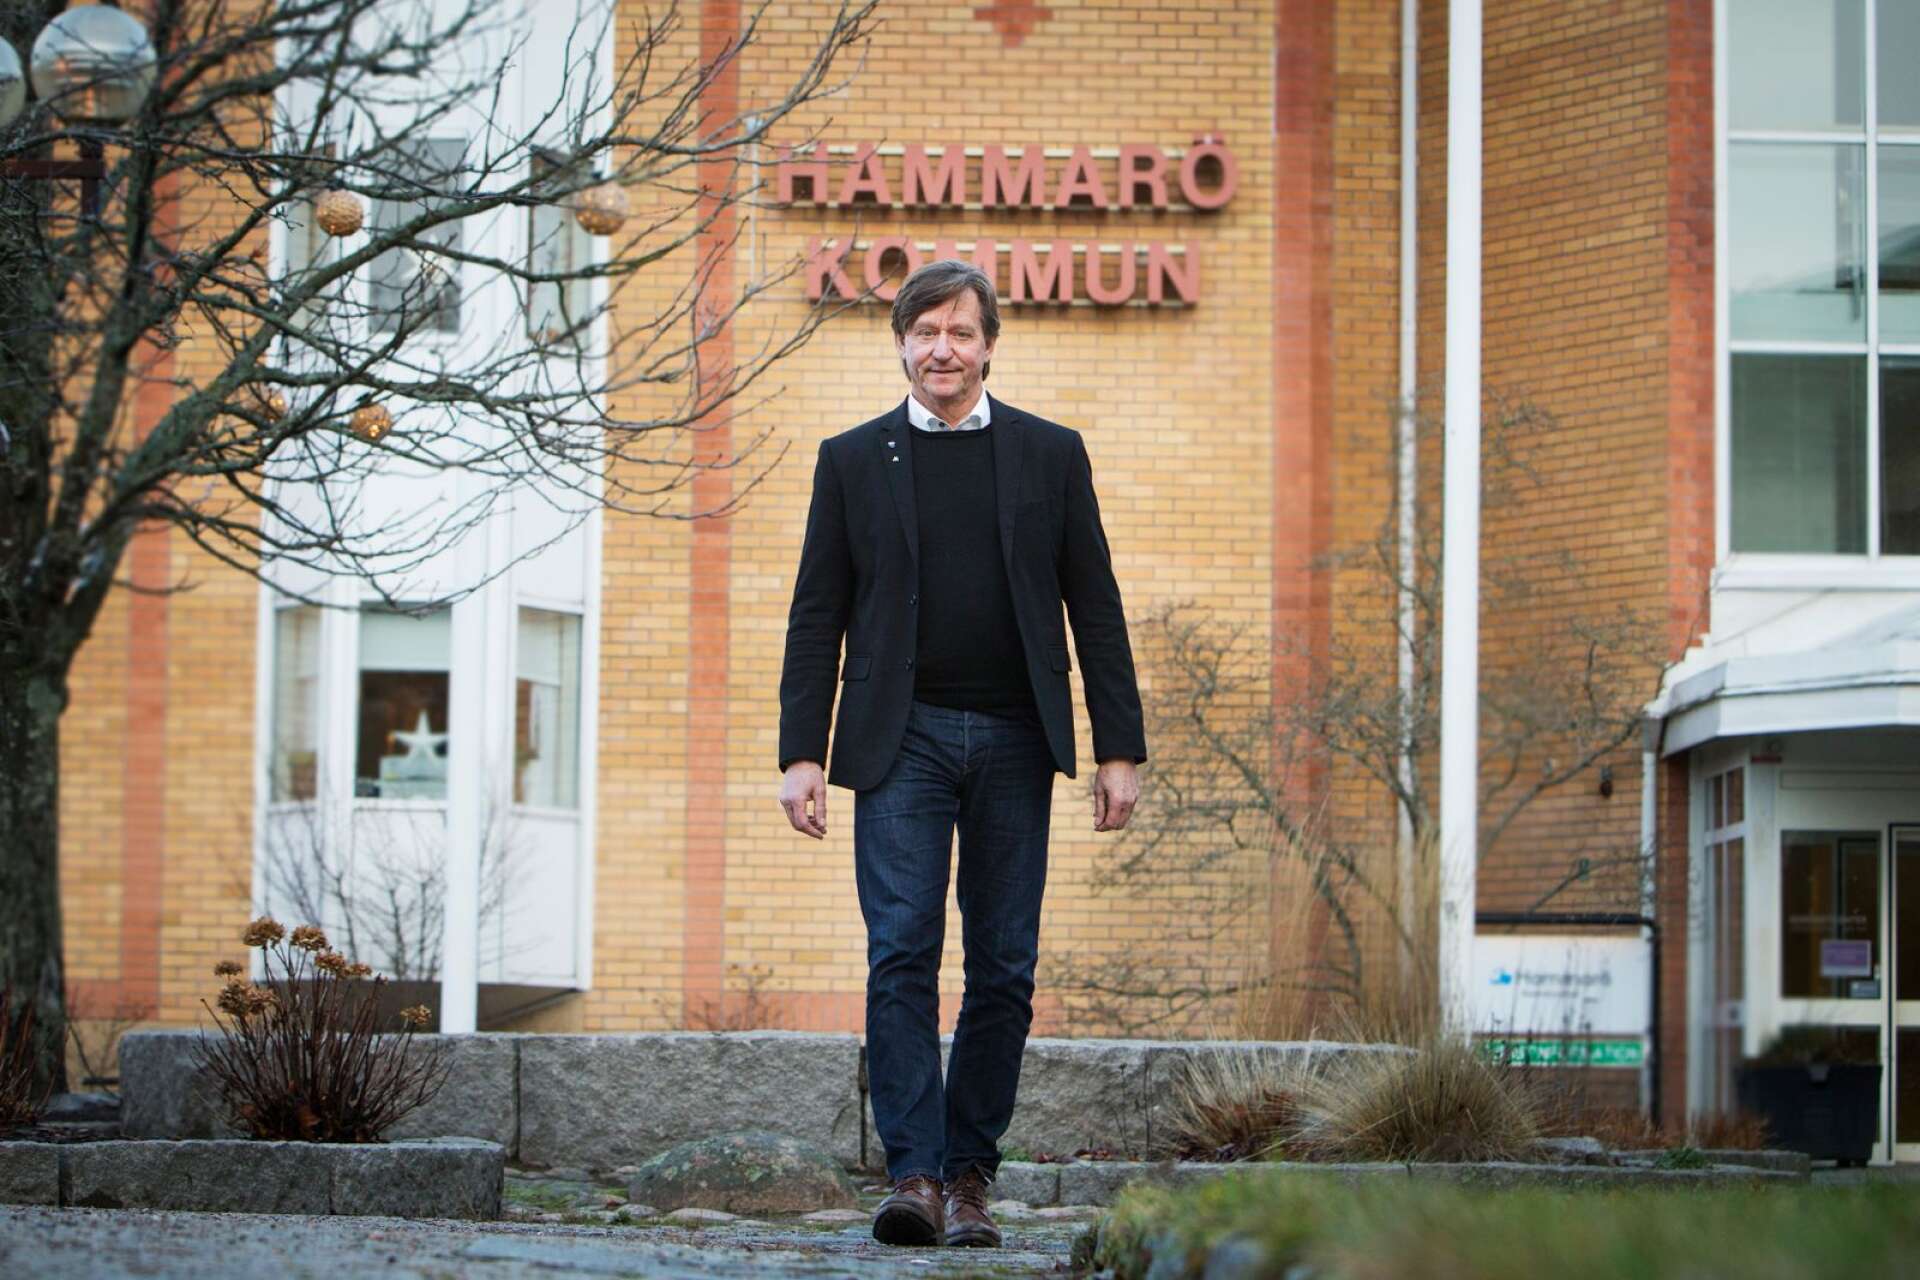  


Bosse Henriksson (M) och de övriga i Hammarösamverkan föreslår en skattesänkning.